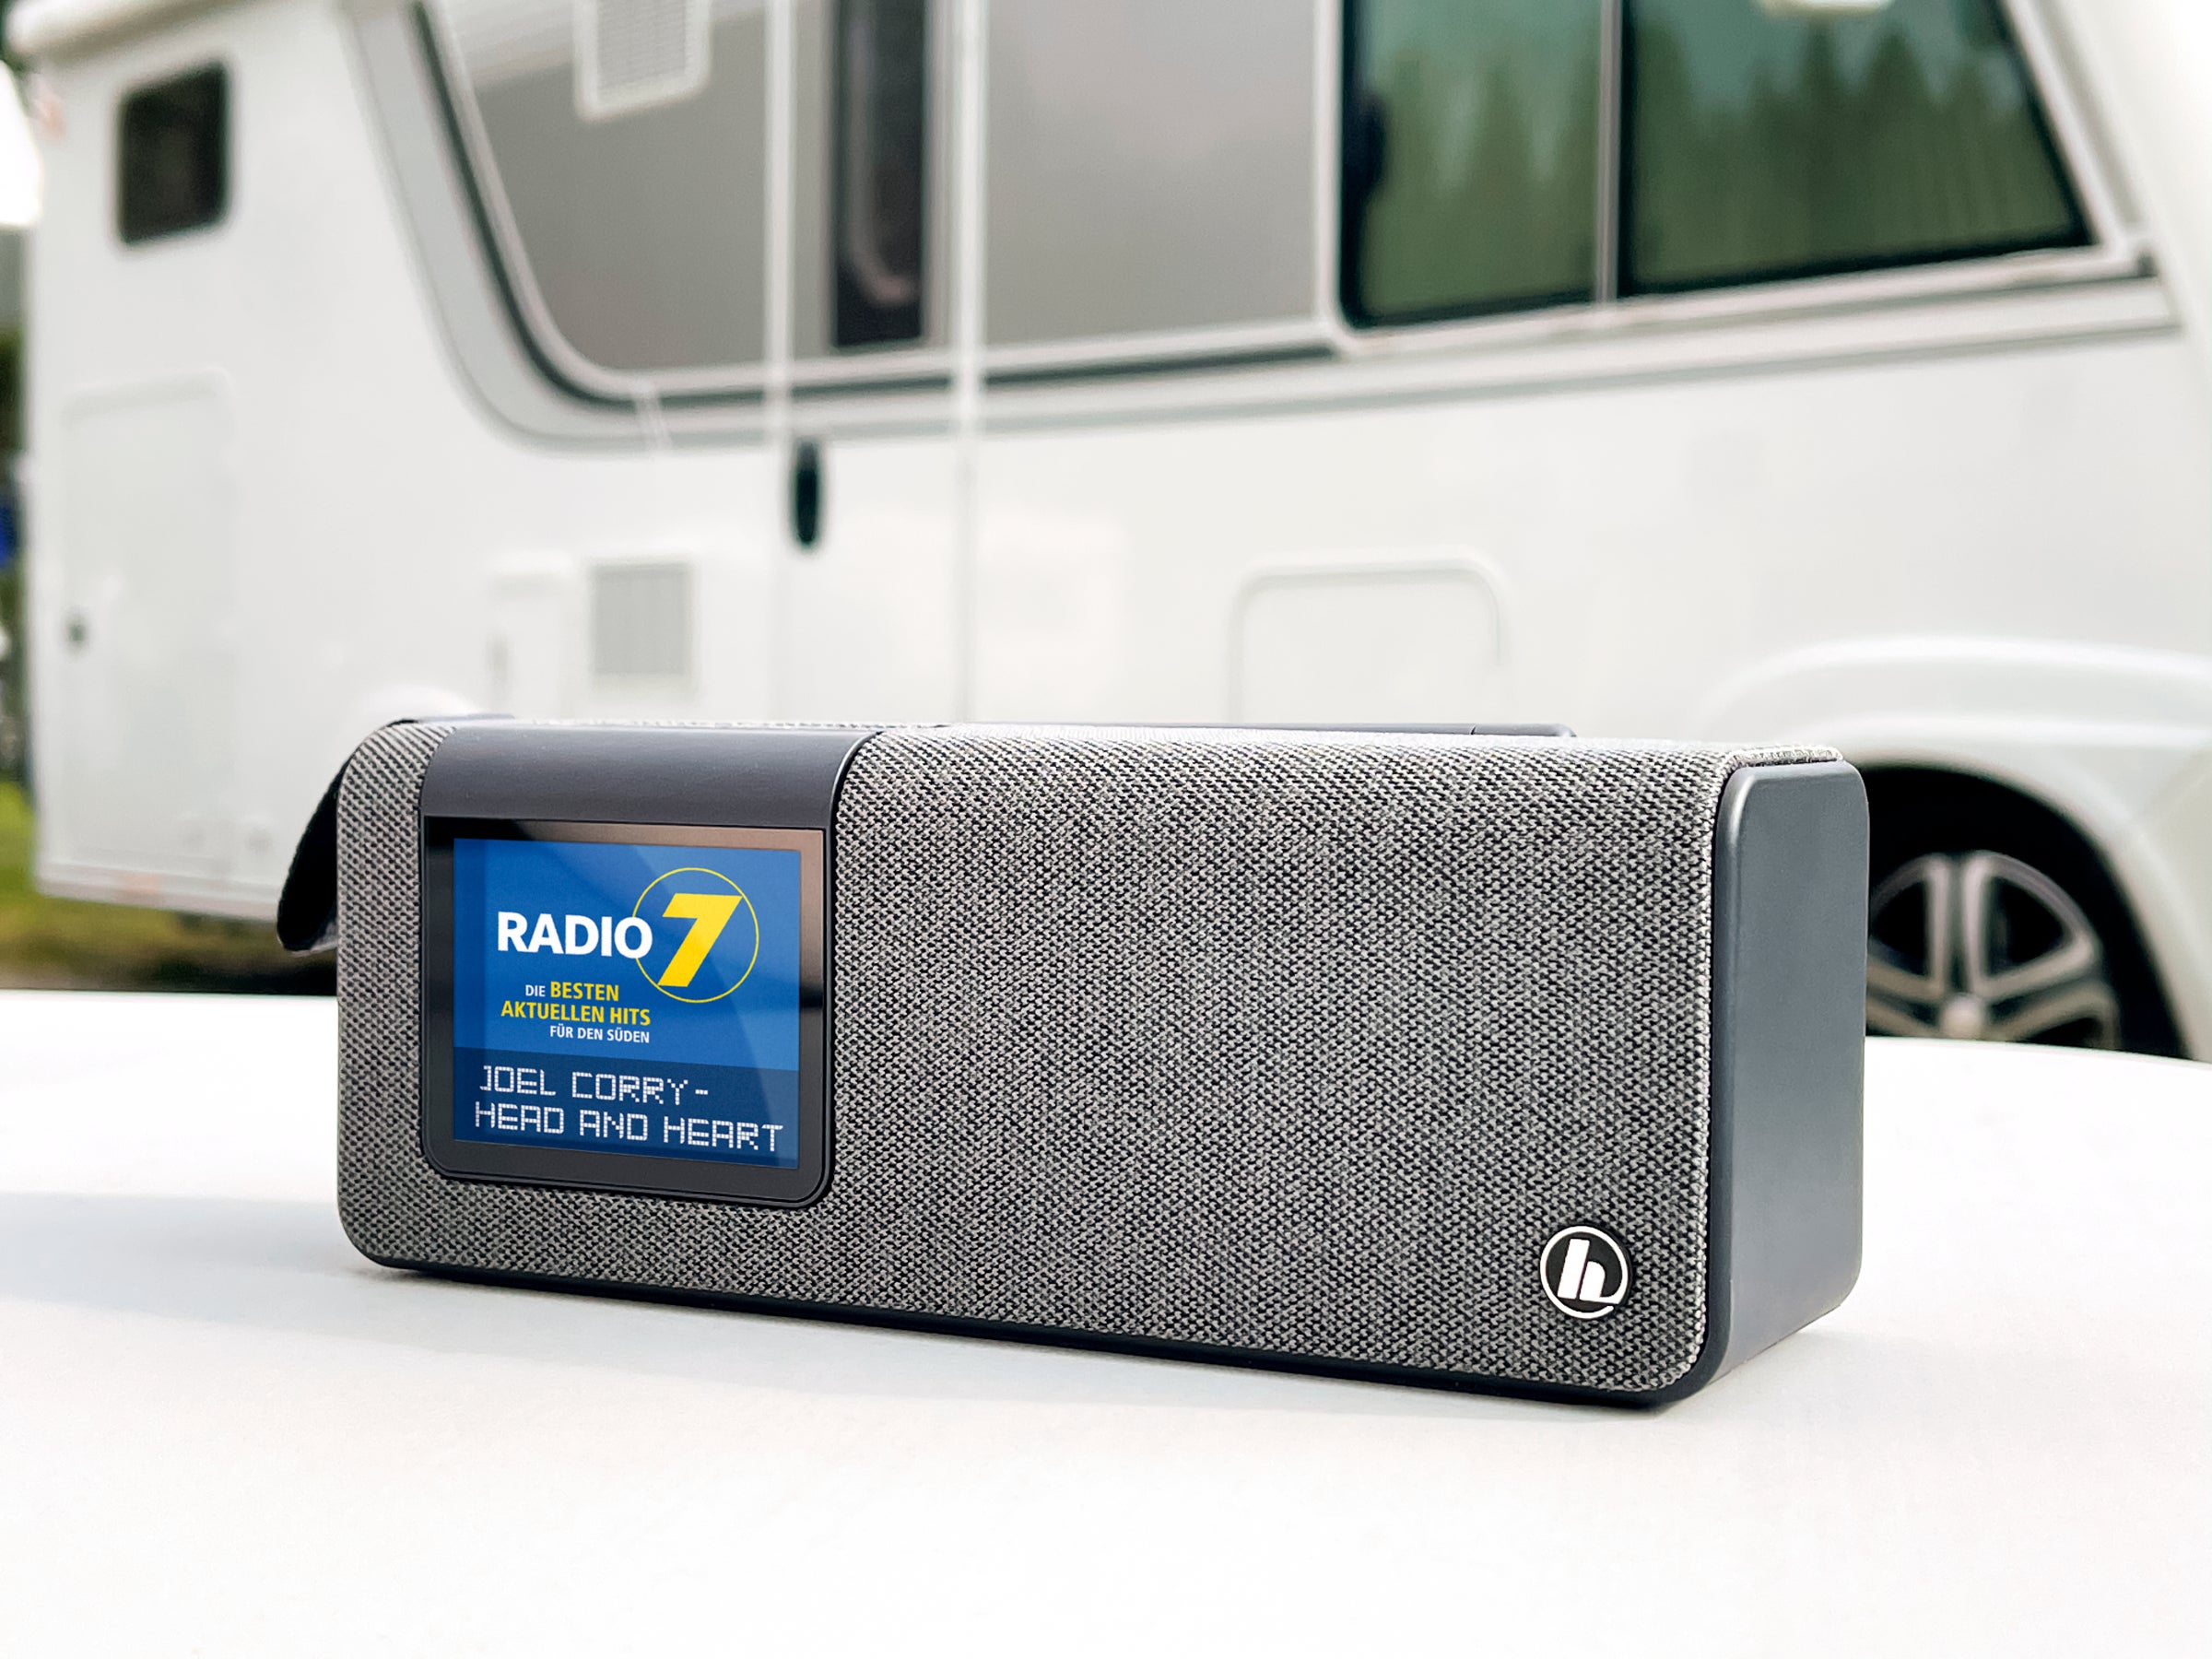 Digitalradio und Bluetooth-Box in einem: Dieses Gadget ist top für draußen